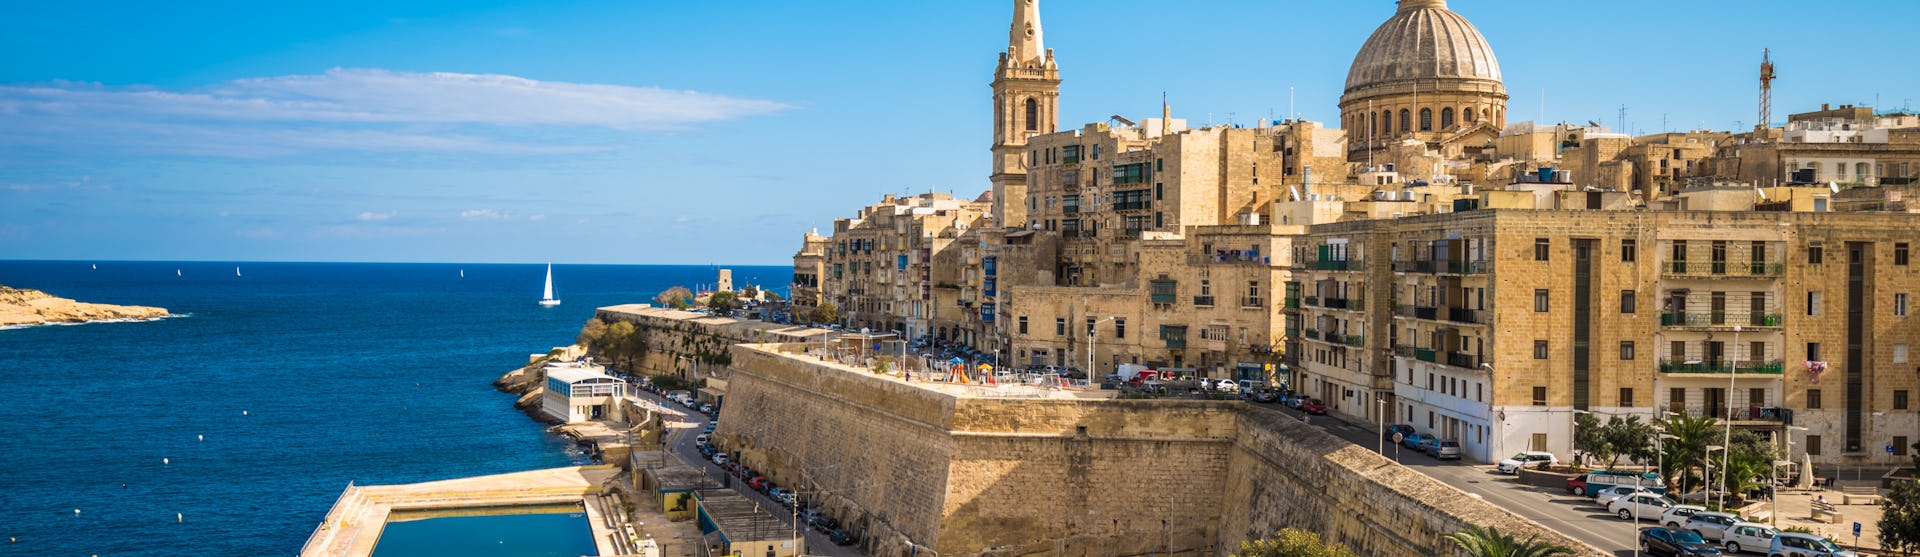 Ofertas de cruceros por Malta